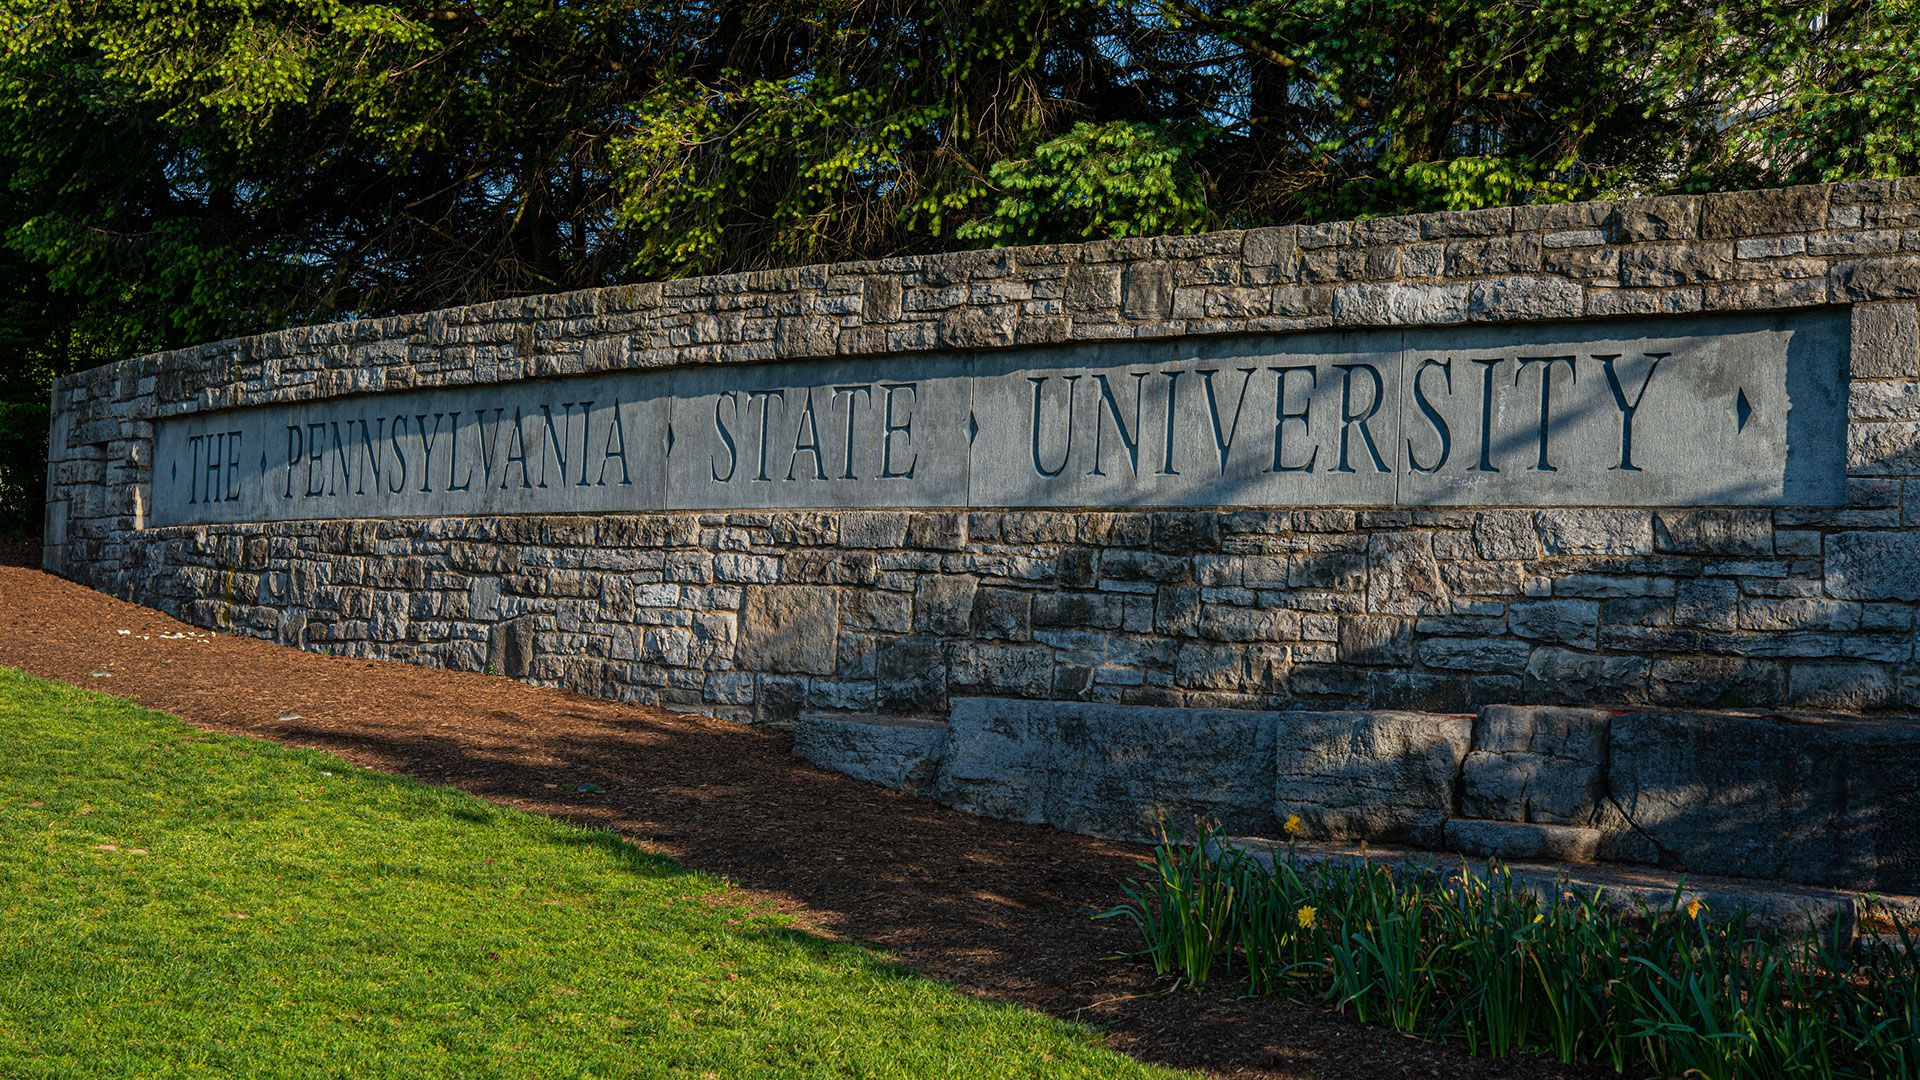 Penn State University sign